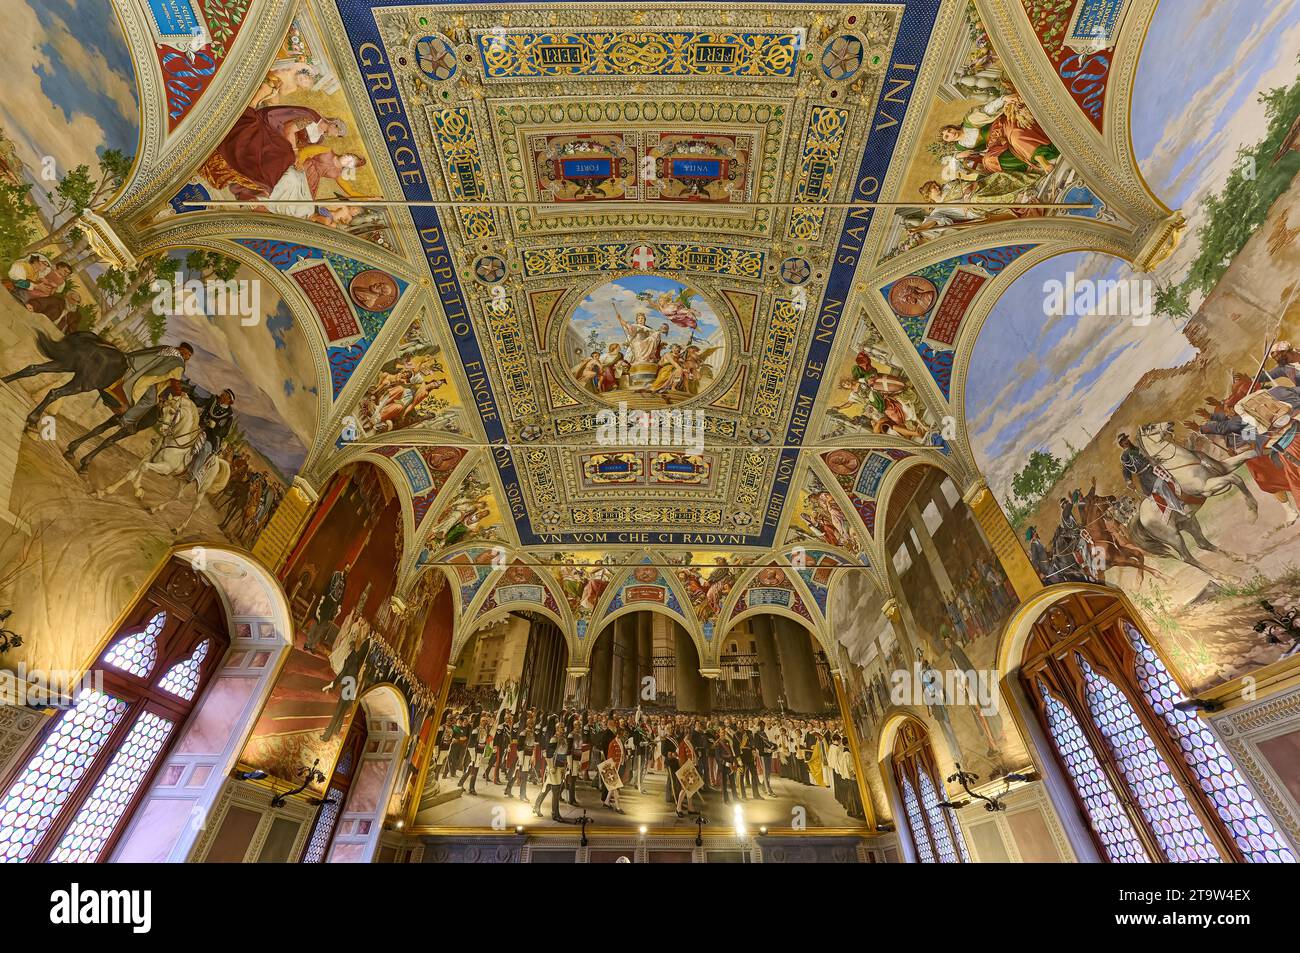 Room of the Risorgimento, interior shot of Palazzo Pubblico, Siena, Tuscany, Italy Stock Photo